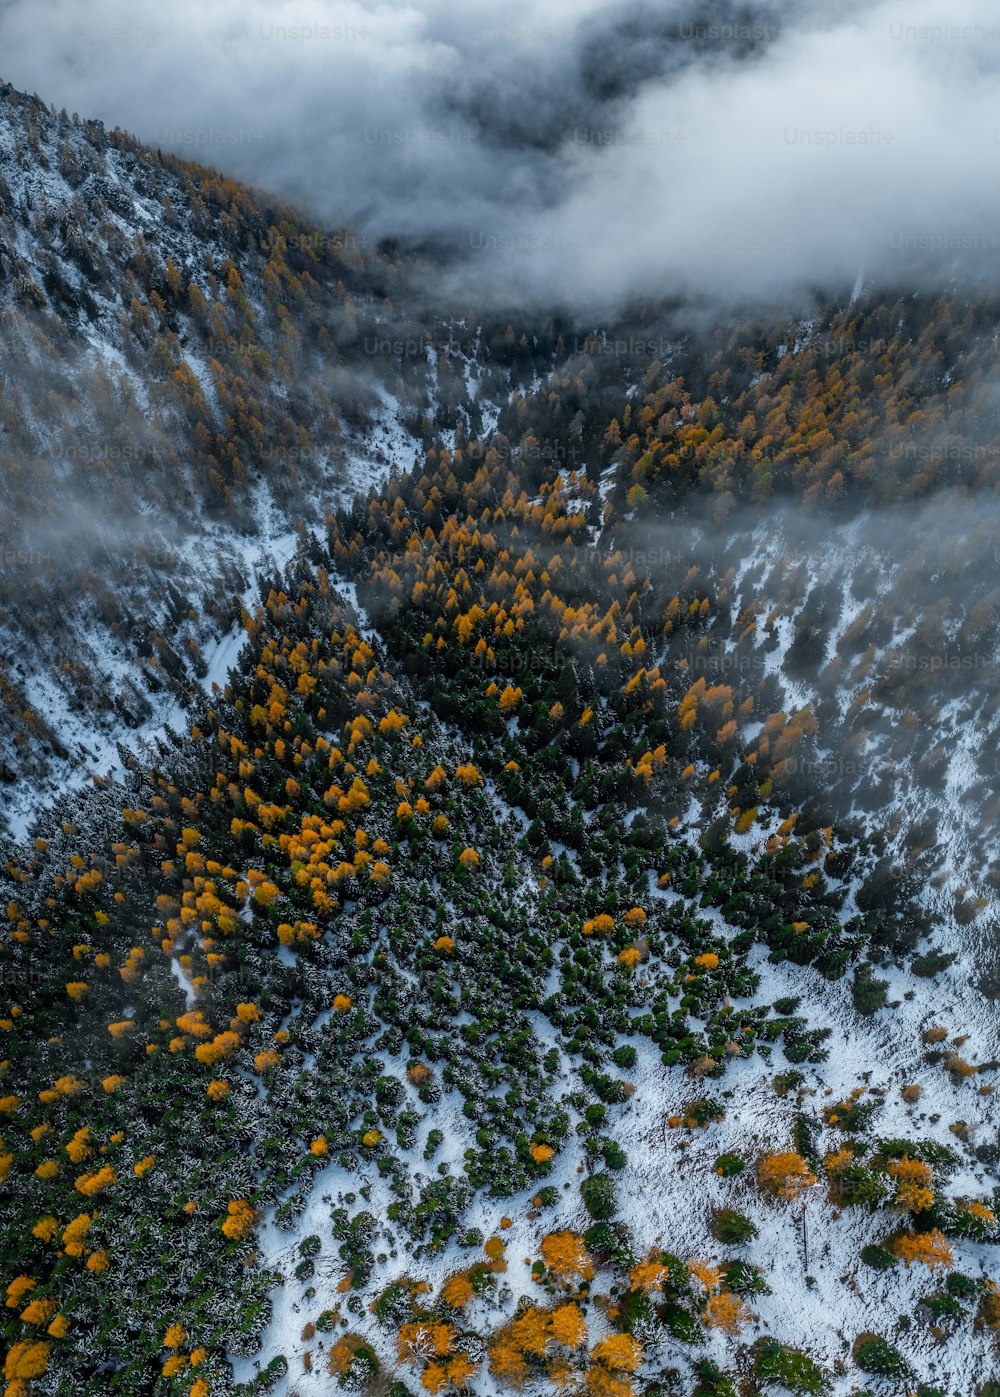 Una vista aérea de una montaña cubierta de nieve